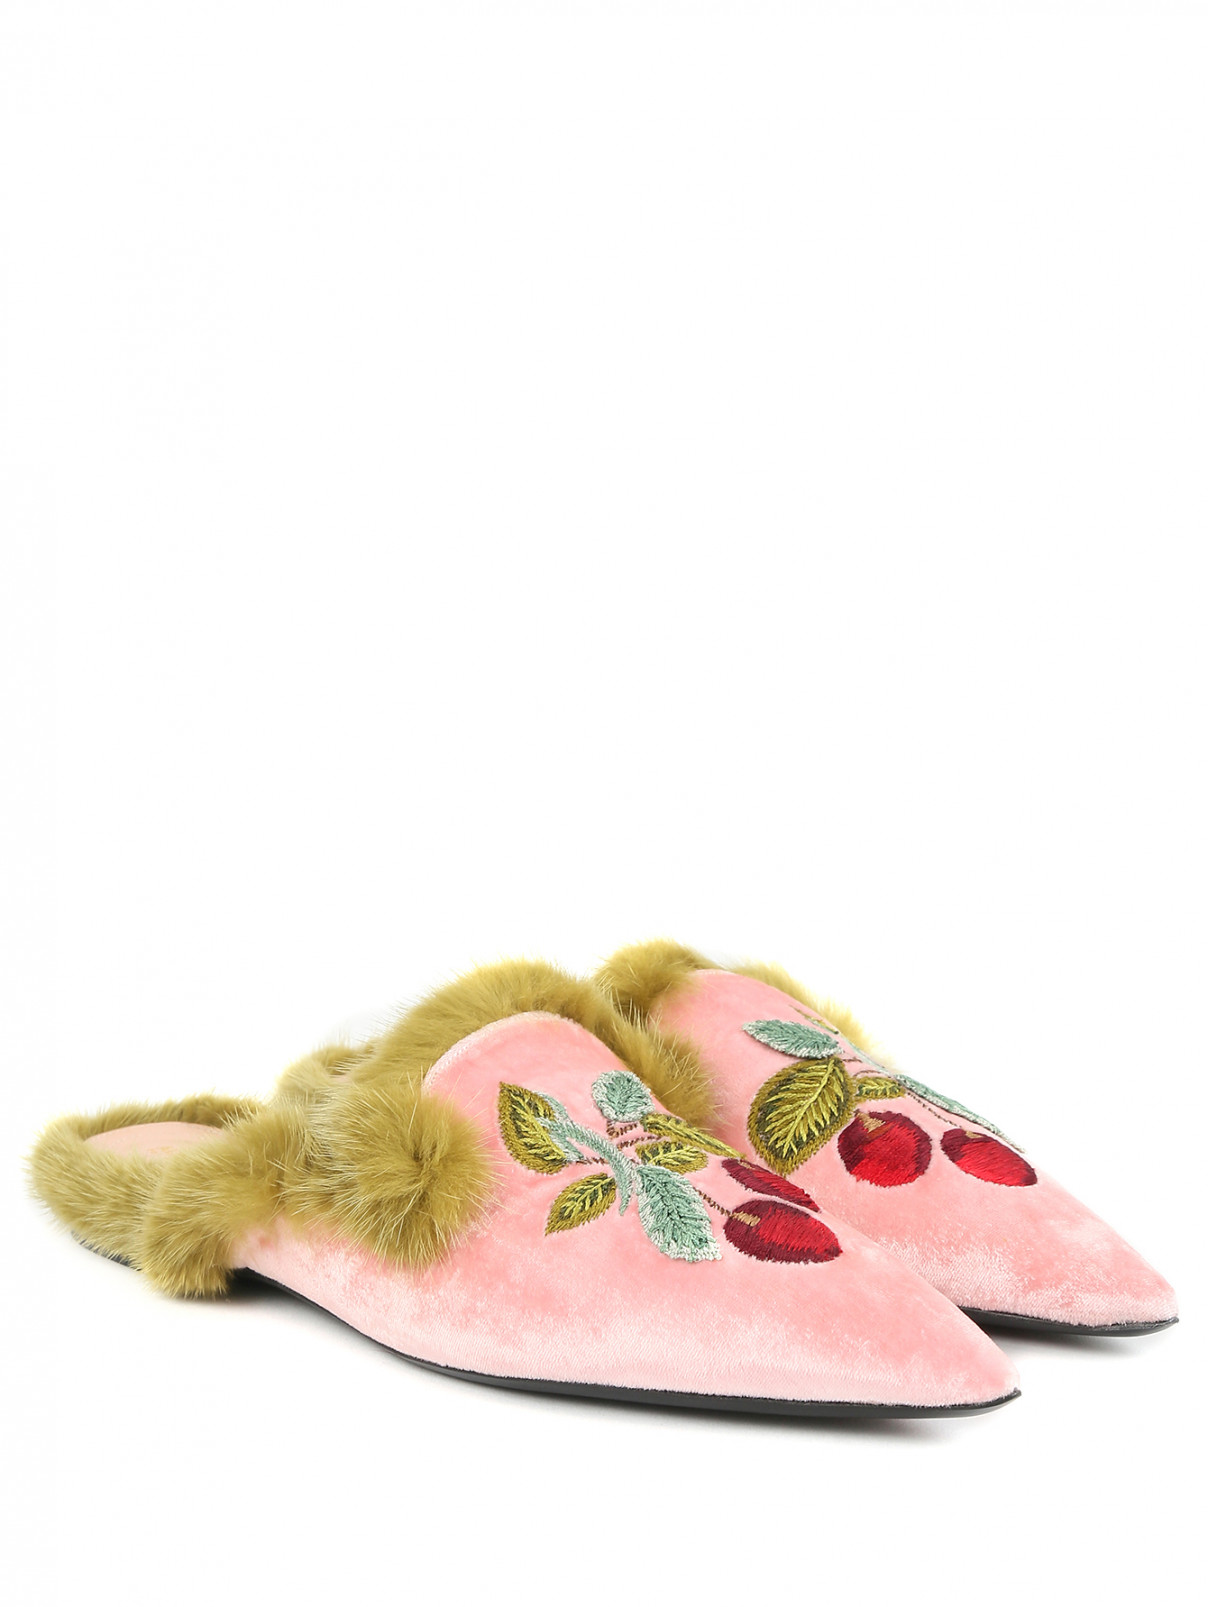 Мюли из бархата с вышивкой и декоративной меховой отделкой Alberta Ferretti  –  Общий вид  – Цвет:  Розовый